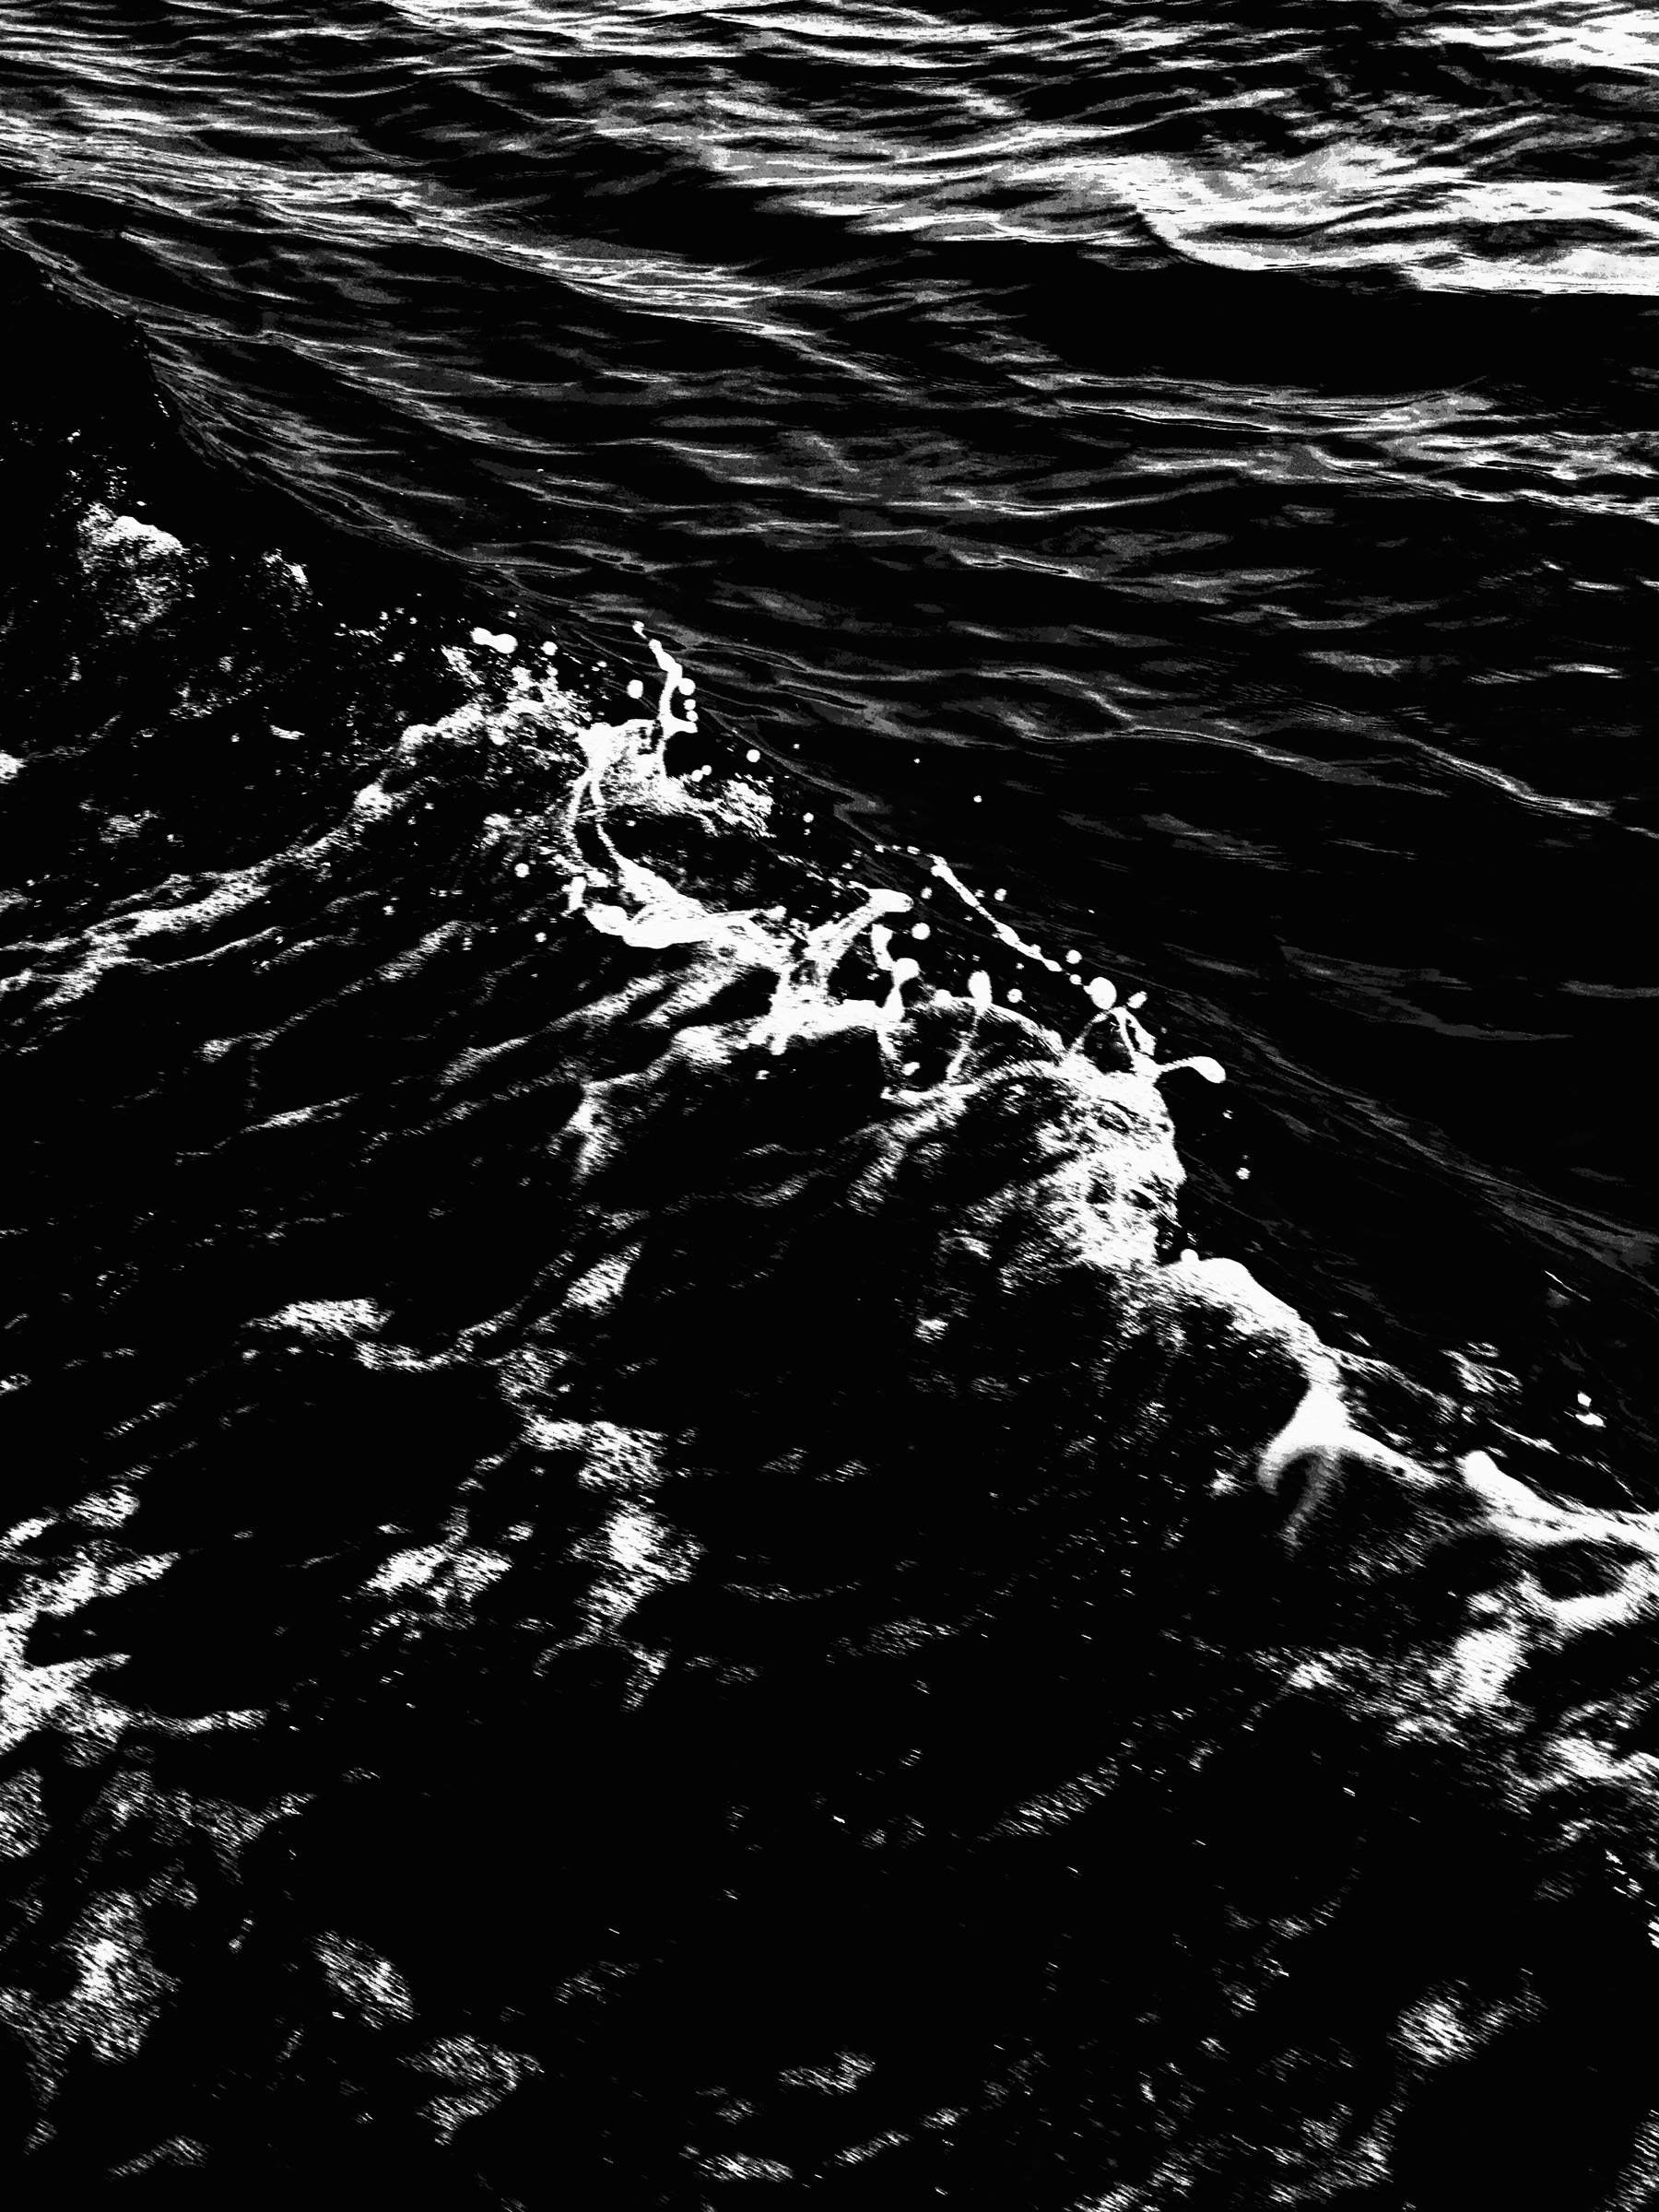 Dark Water 3 by Alex Schaefer